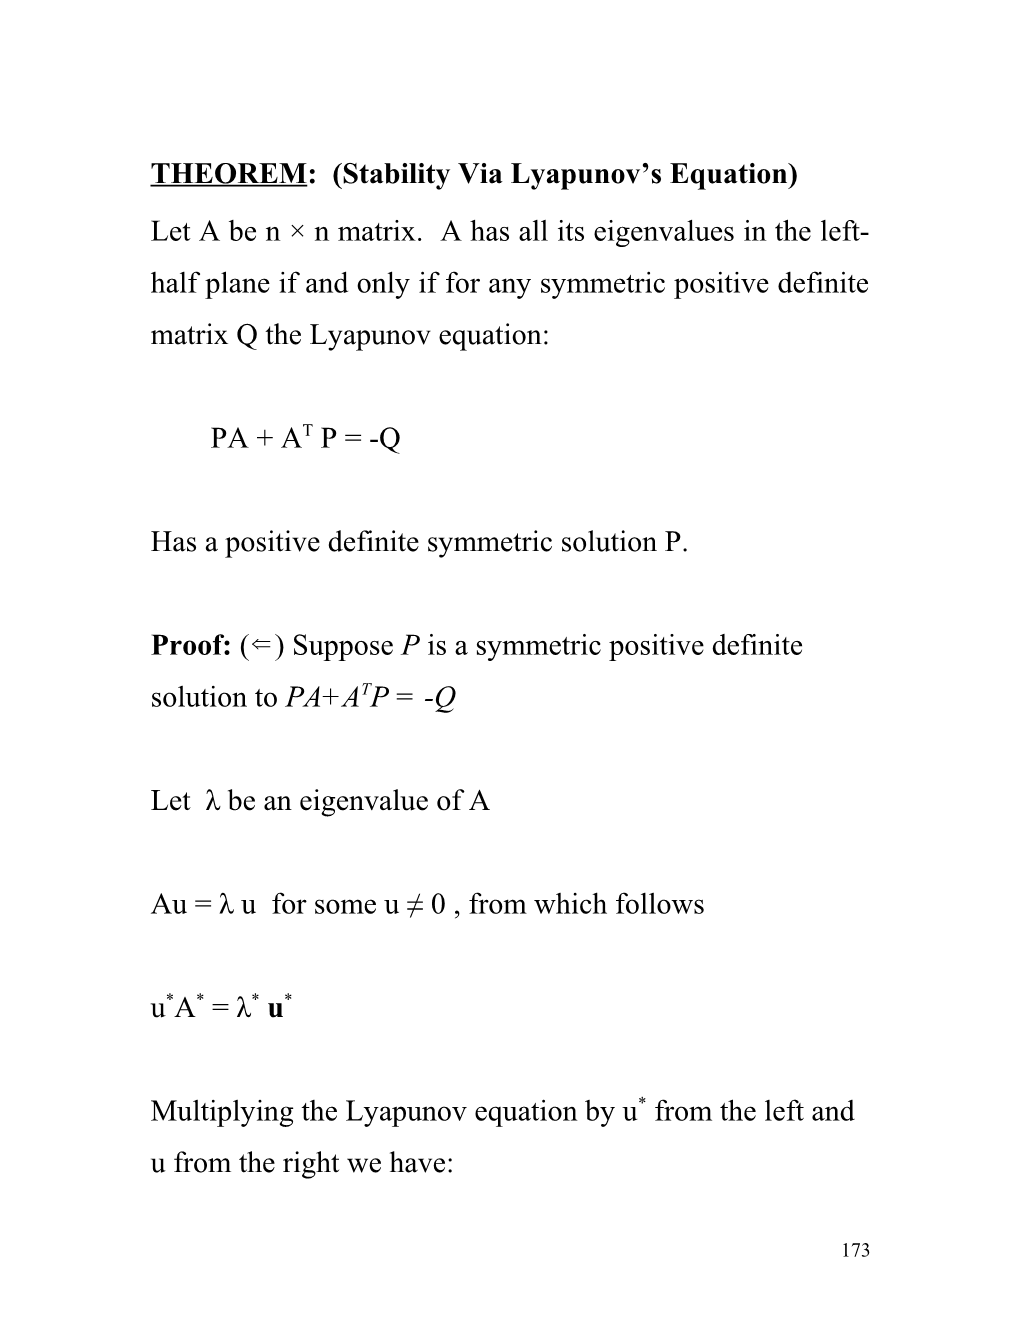 Lyapunov Stability Theory: a Brief Intro